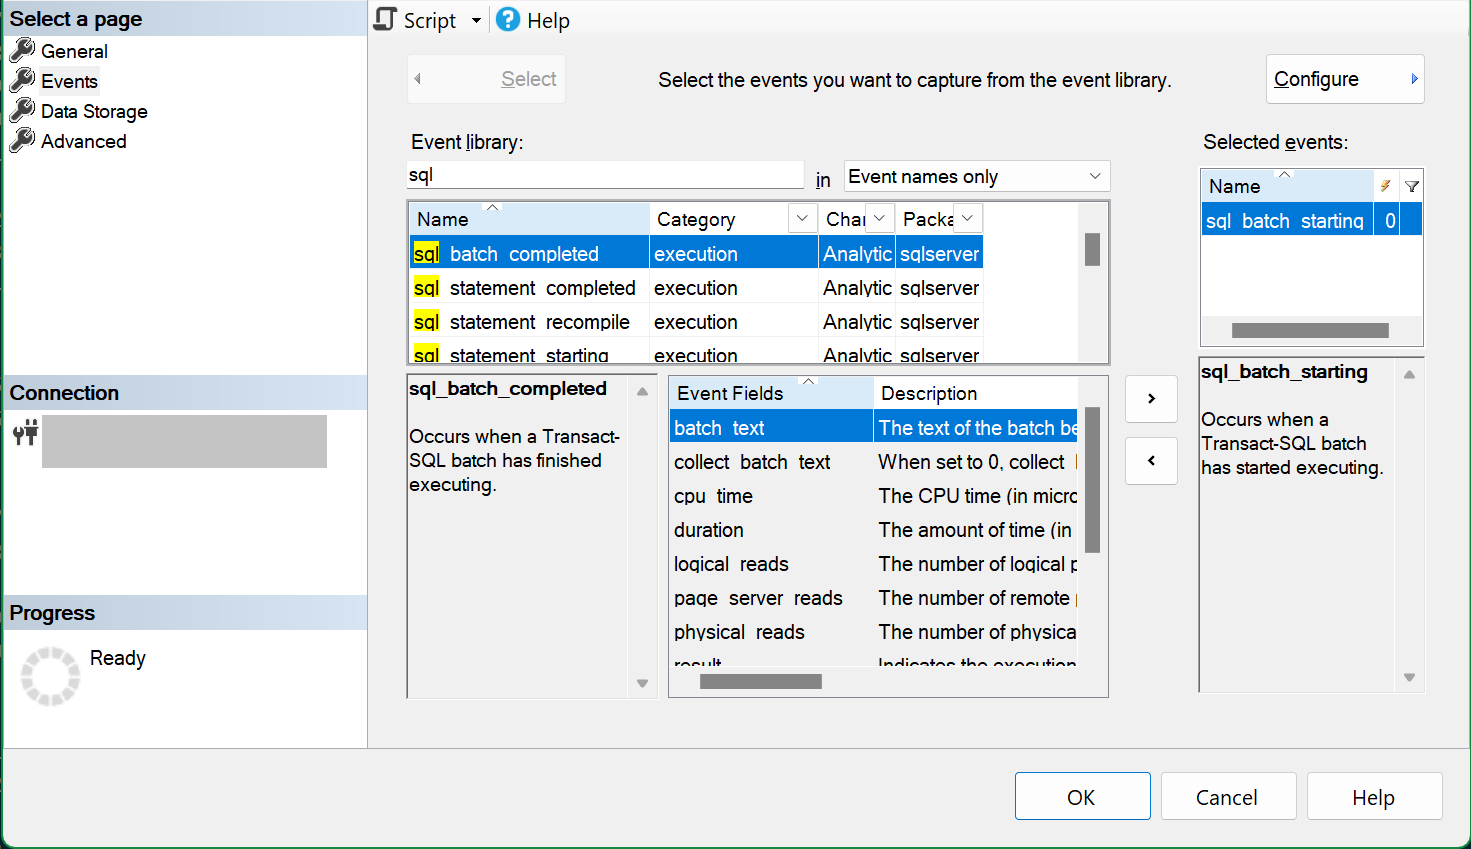 Captura de tela da caixa de diálogo Novo SSMS de Sessão mostrando a página de seleção de eventos com o evento sql_batch_starting selecionado.